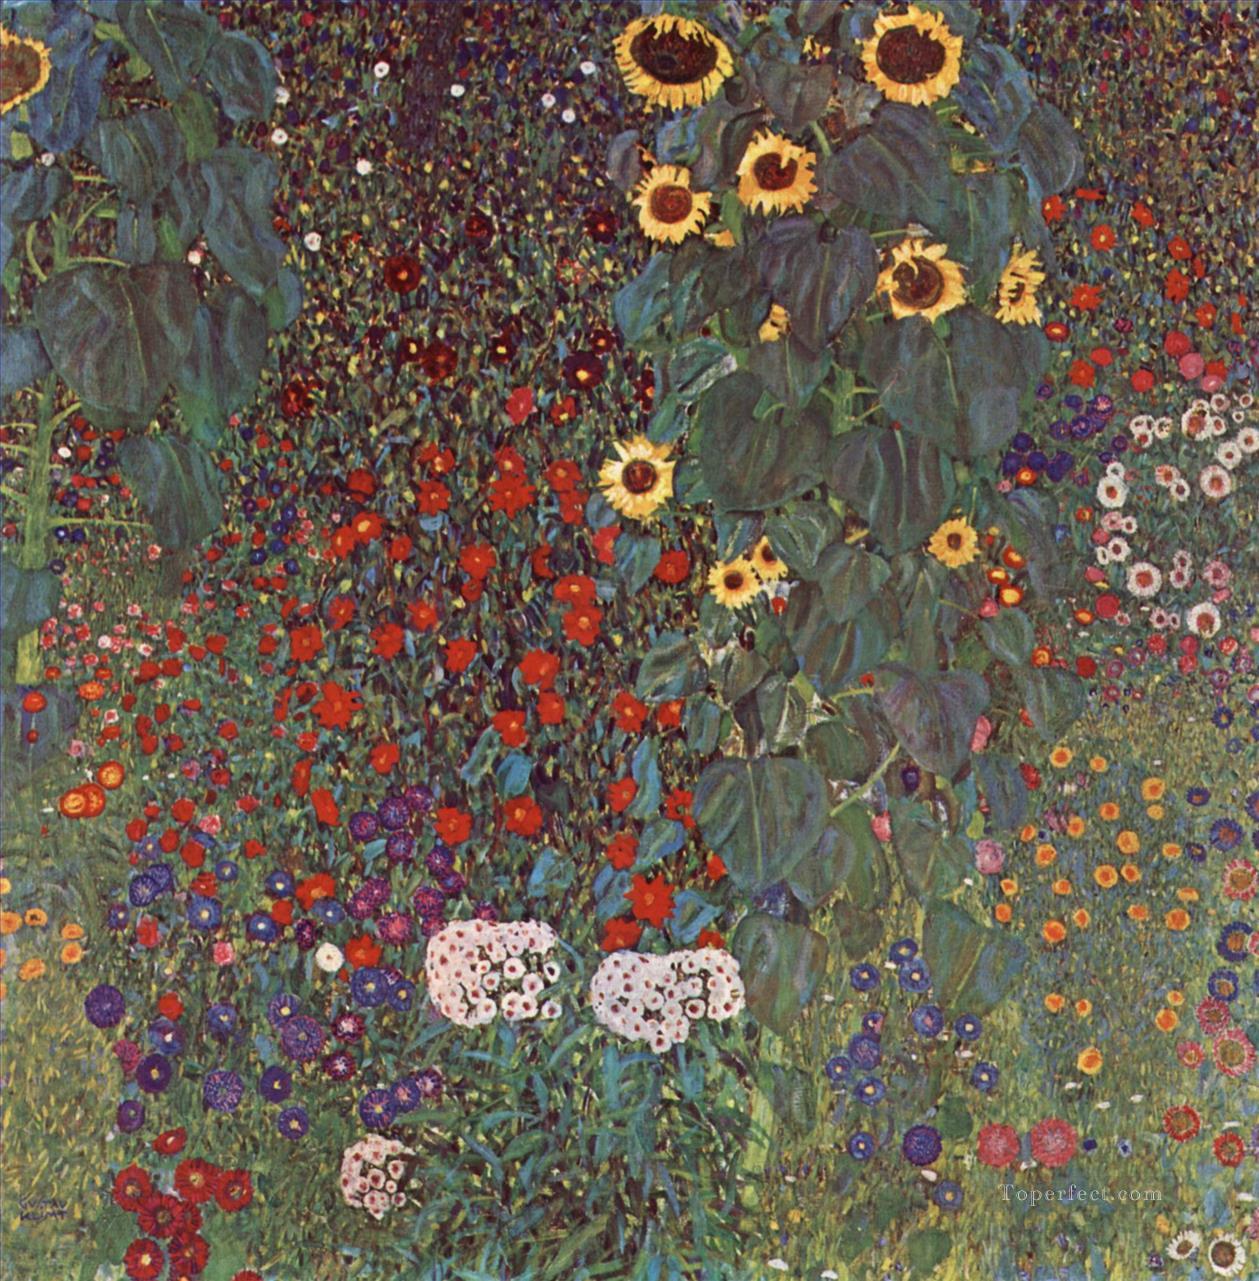 Gartenmit SonnenblumenaufdemLande Simbolismo Gustav Klimt Pintura al óleo